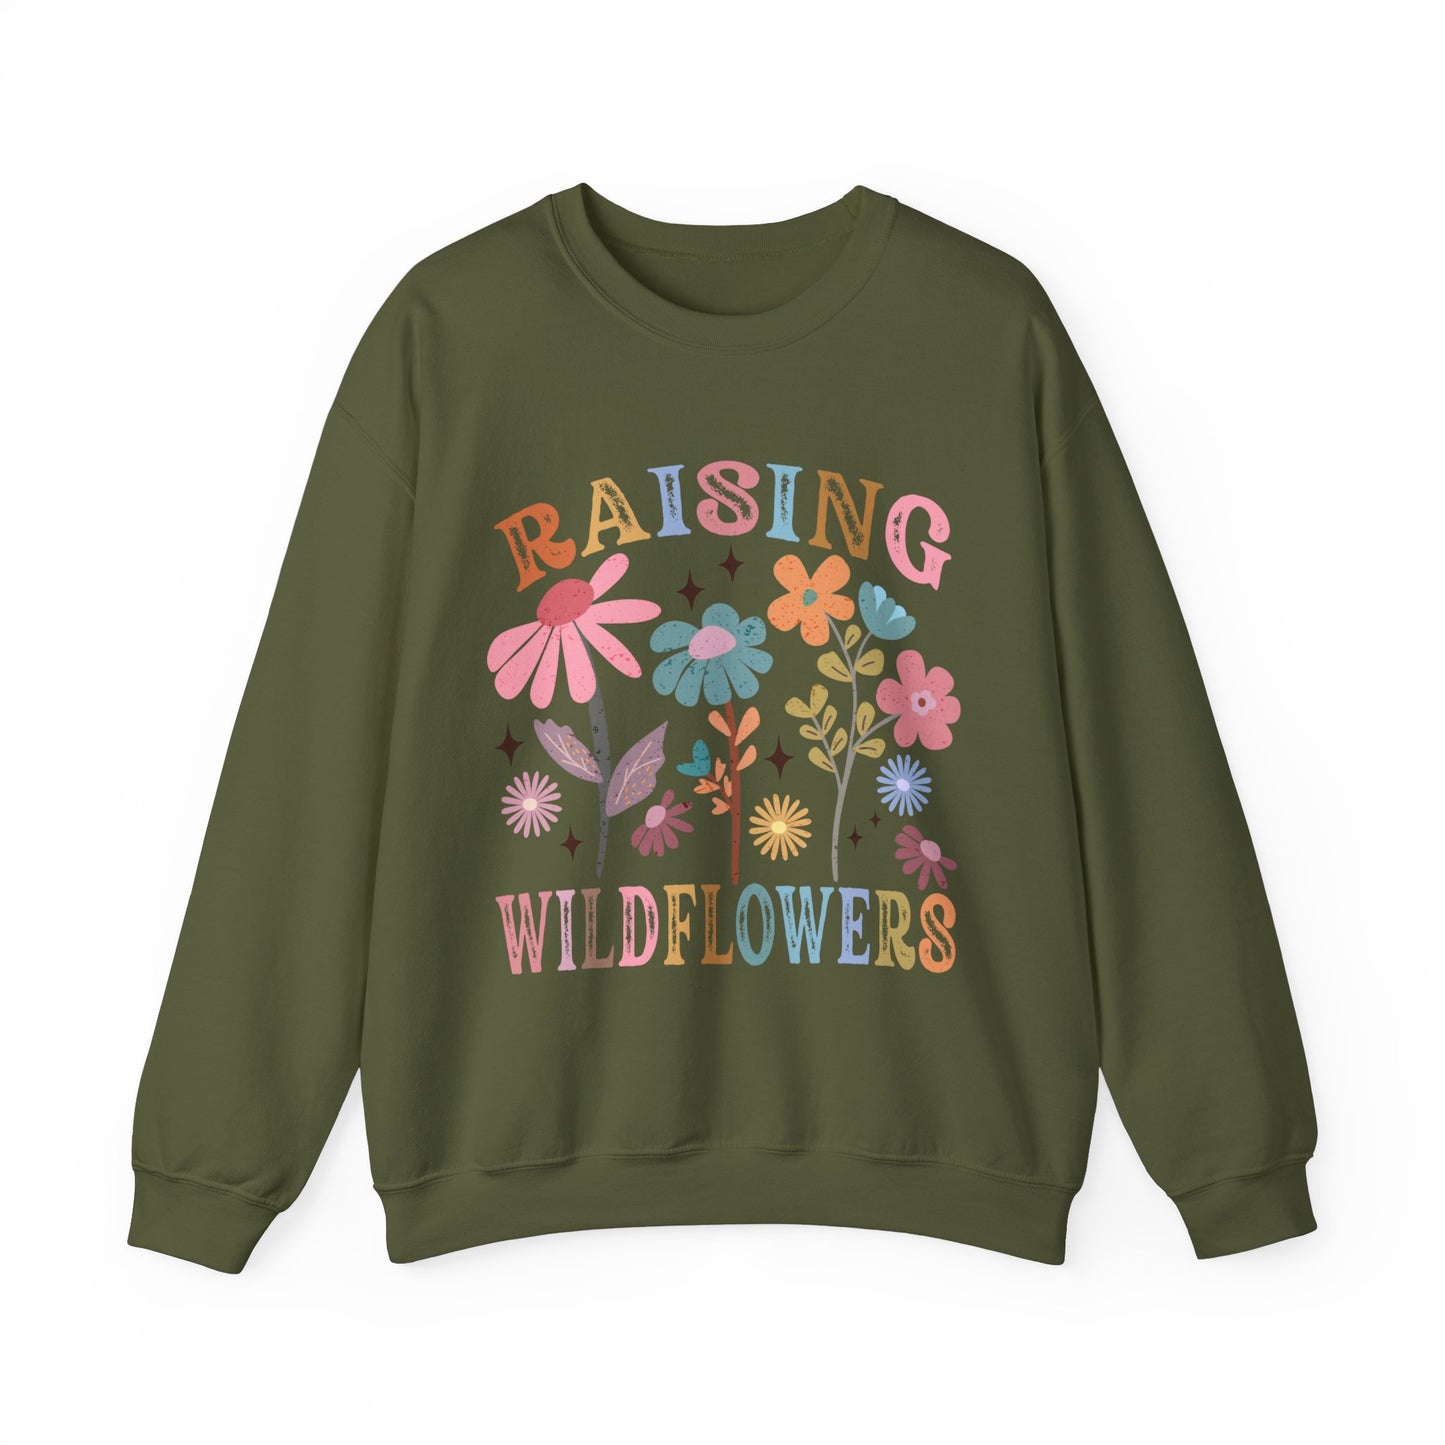 Raising Wildflowers Women's Sweatshirt